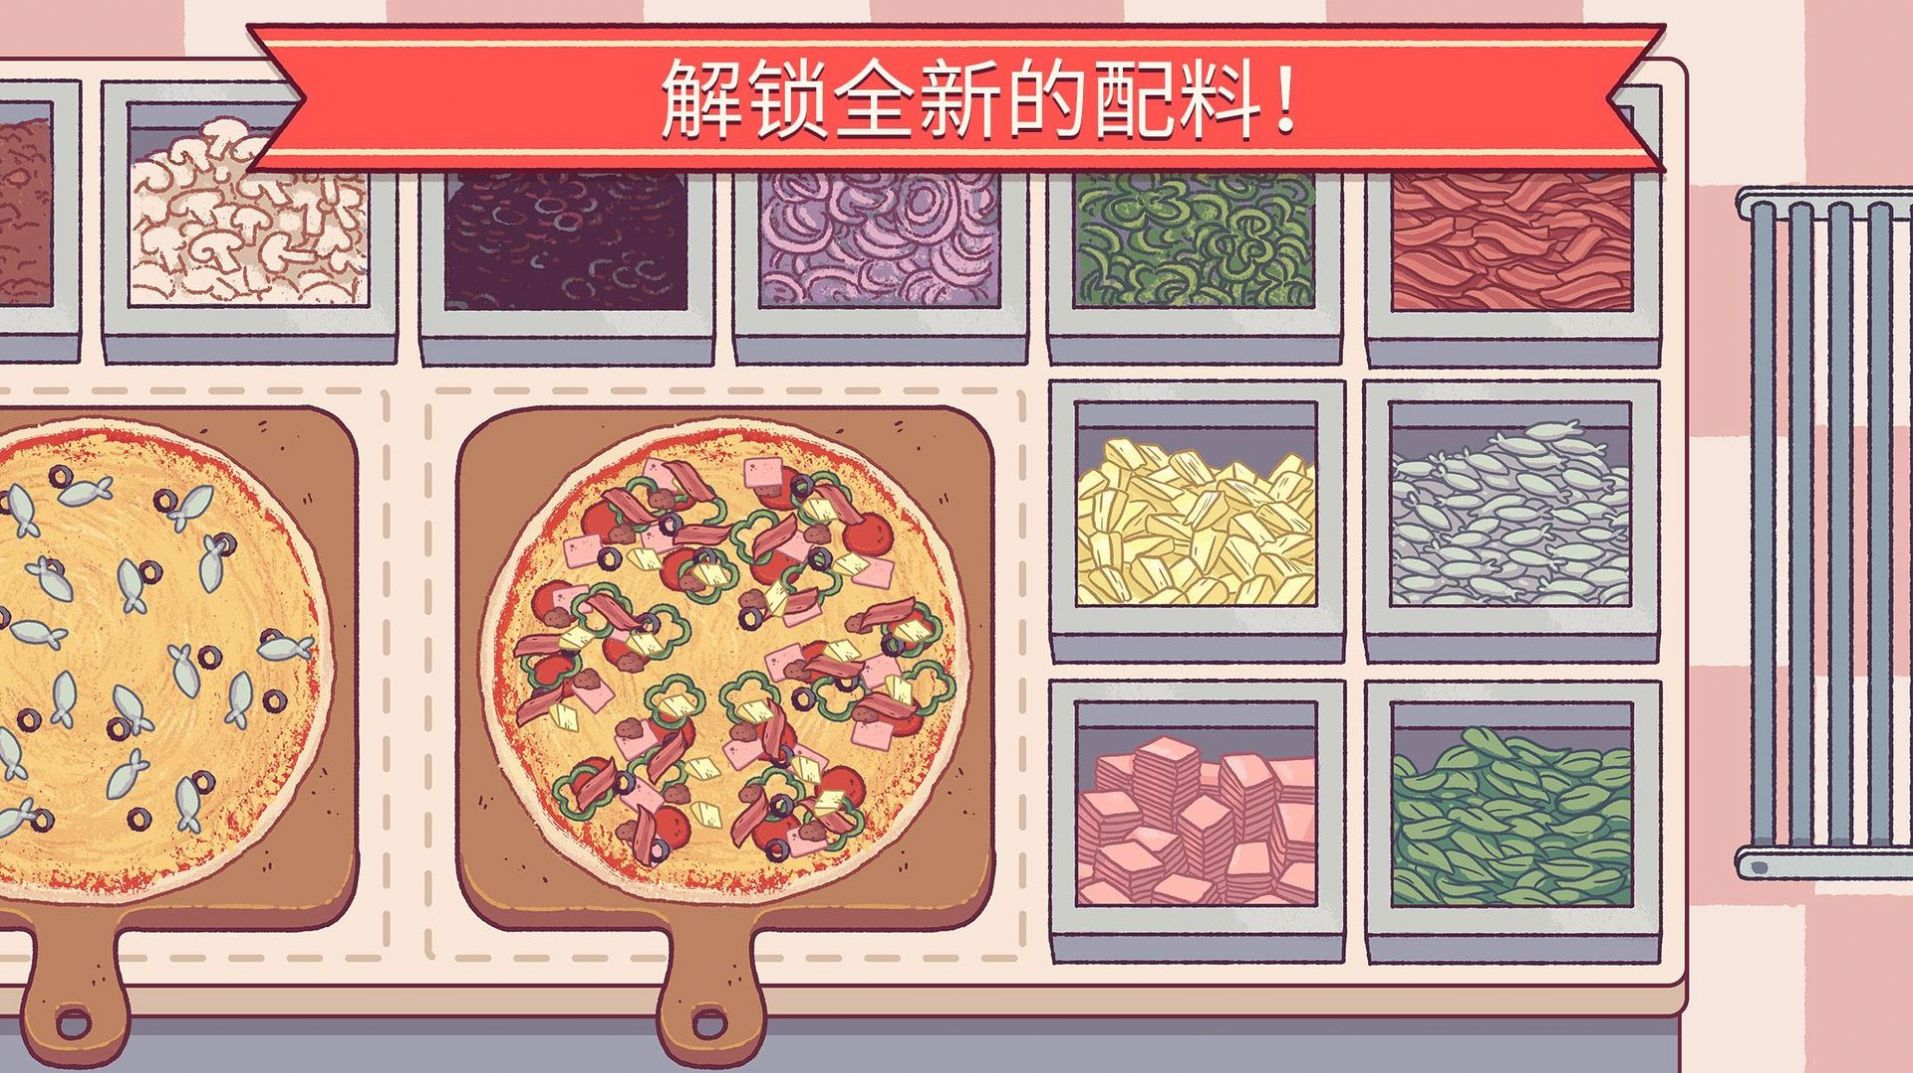 可口的披萨4.8.0版